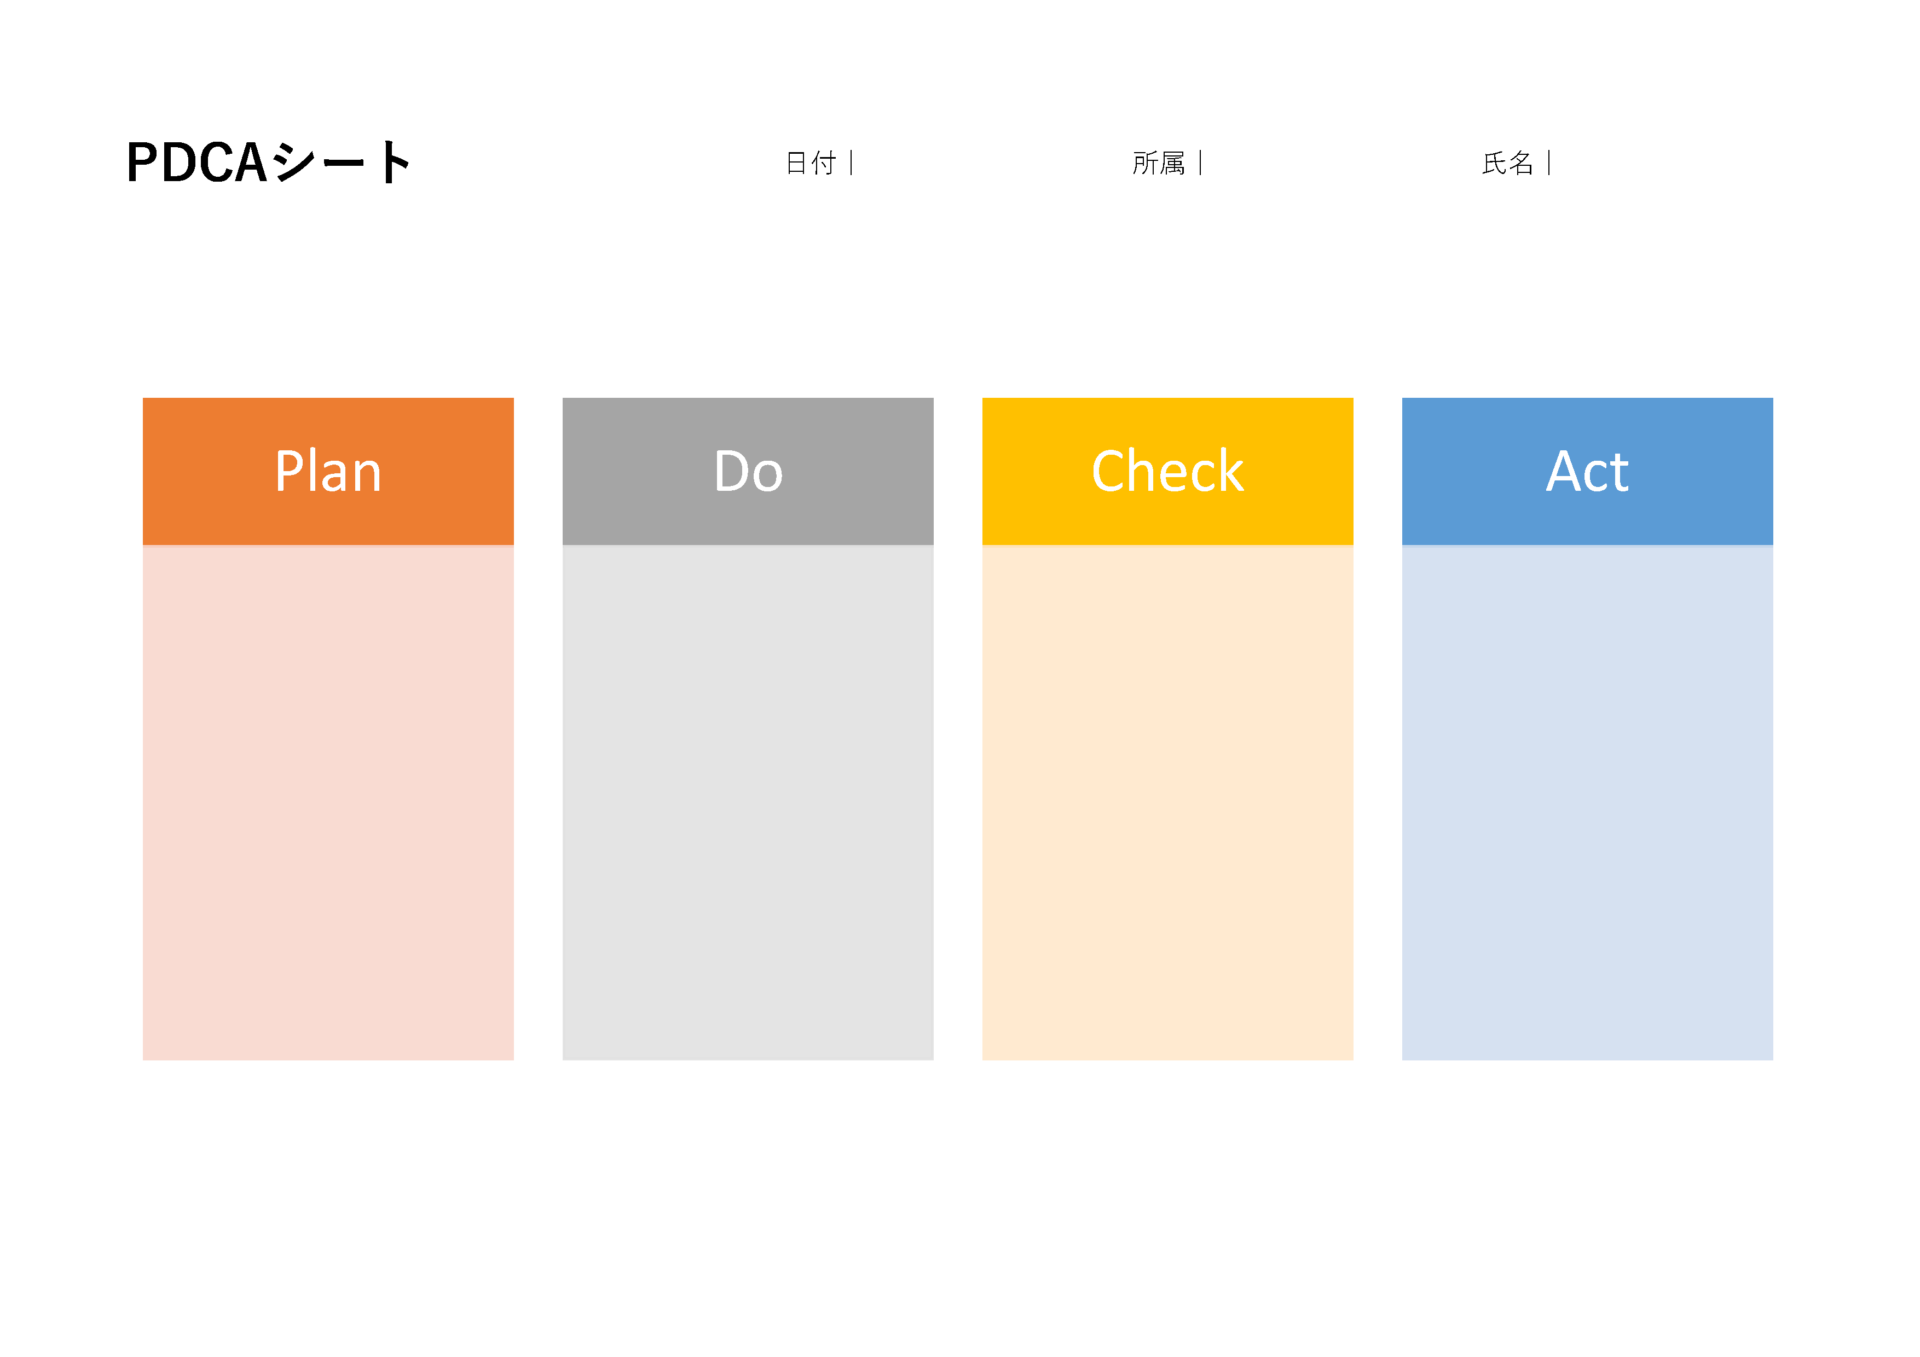 四色のブロックで「Plan」「Do」「Check」「Act」を表示するシンプルなPDCAサイクルテンプレート